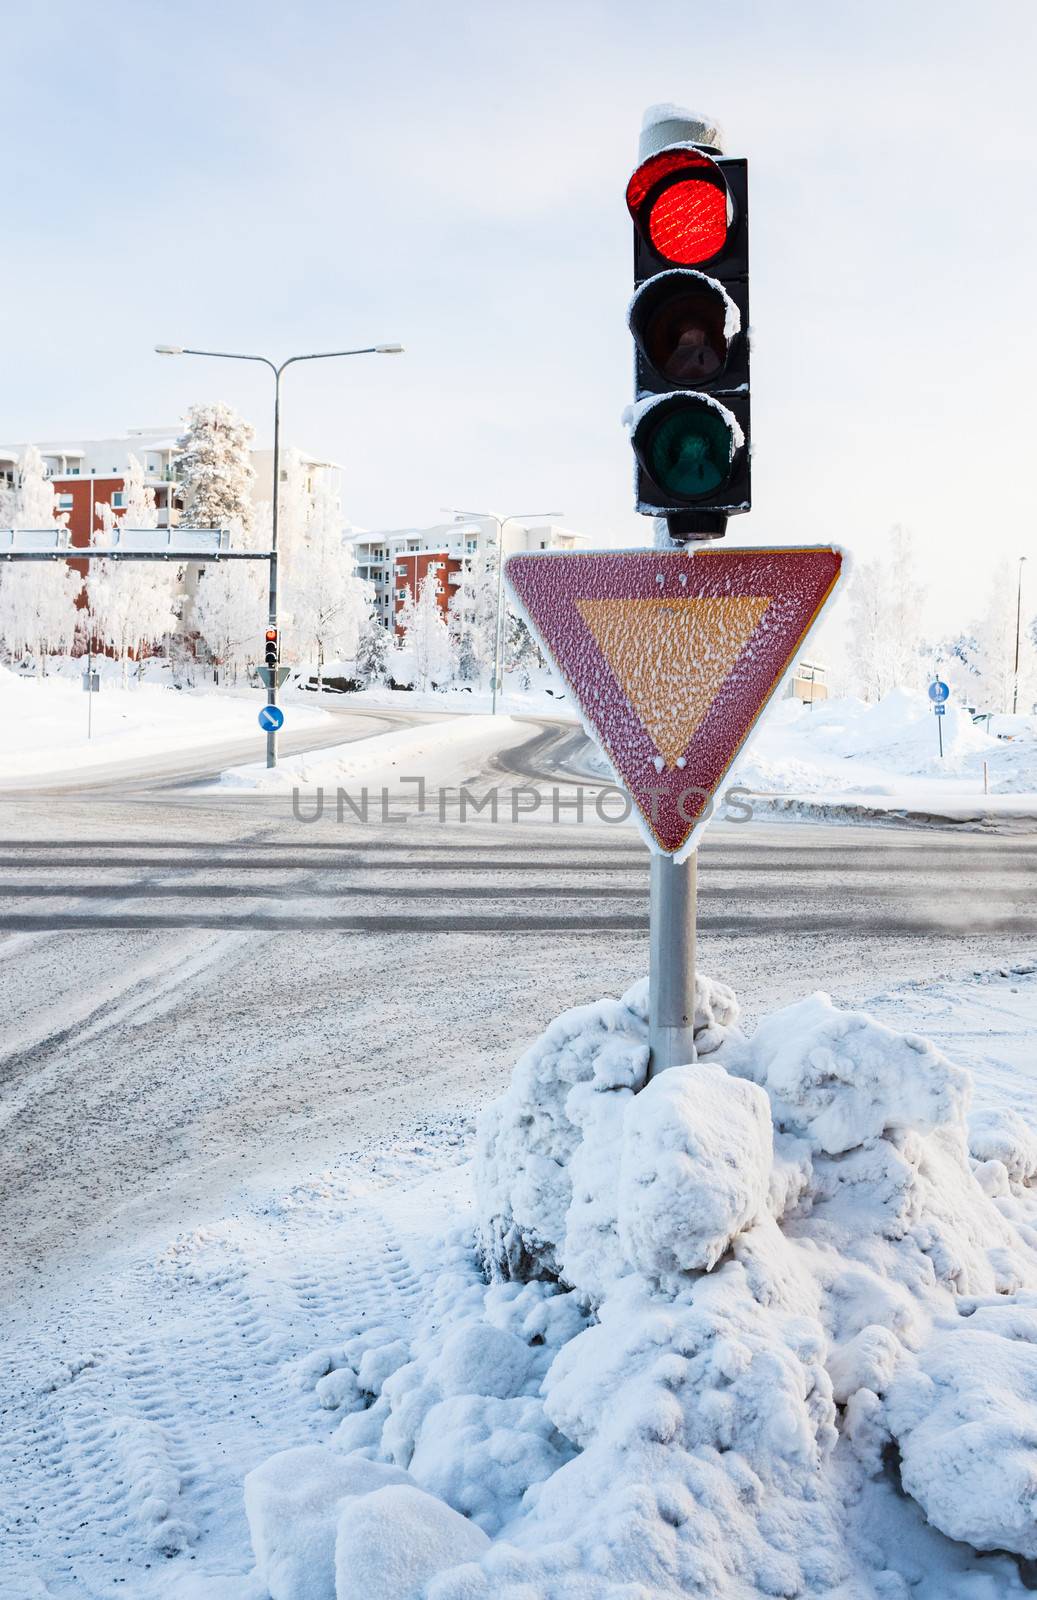 Red traffic light at winter